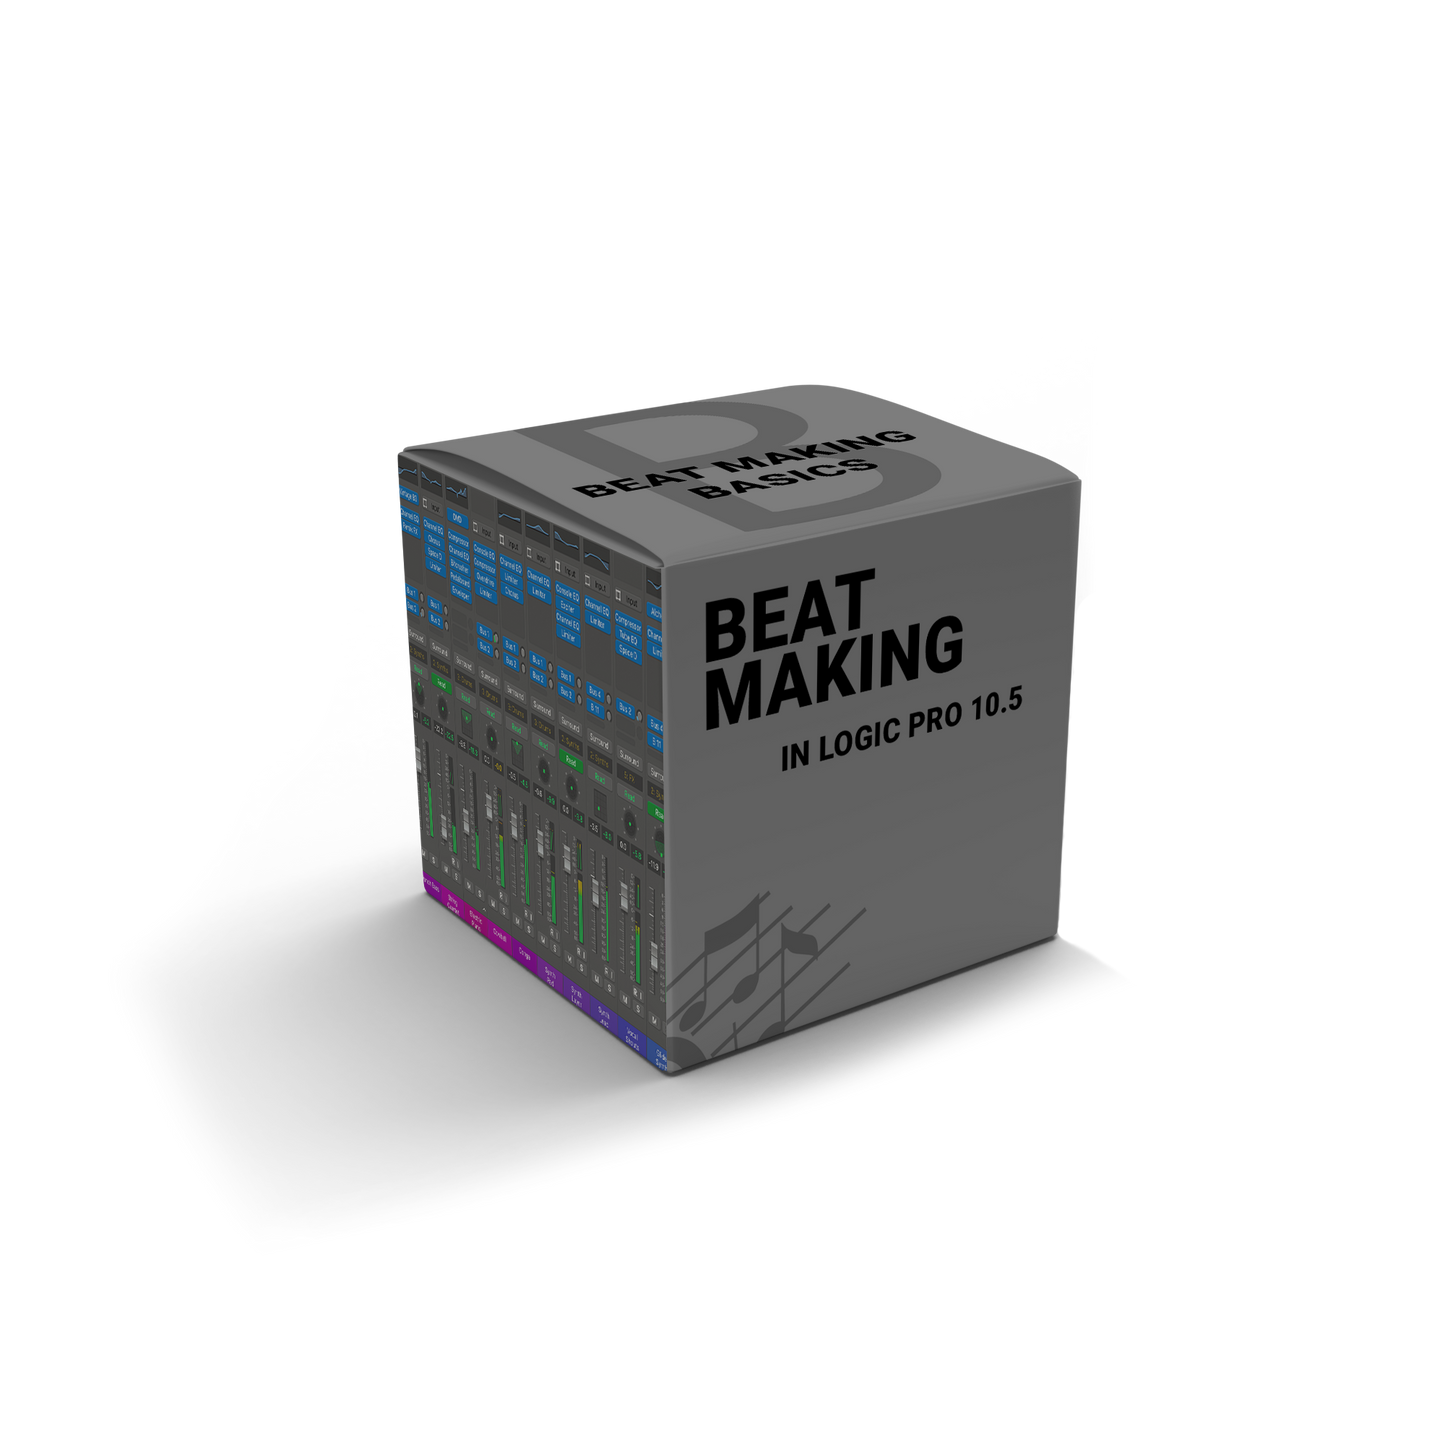 Beat Making In Logic Pro 10.5